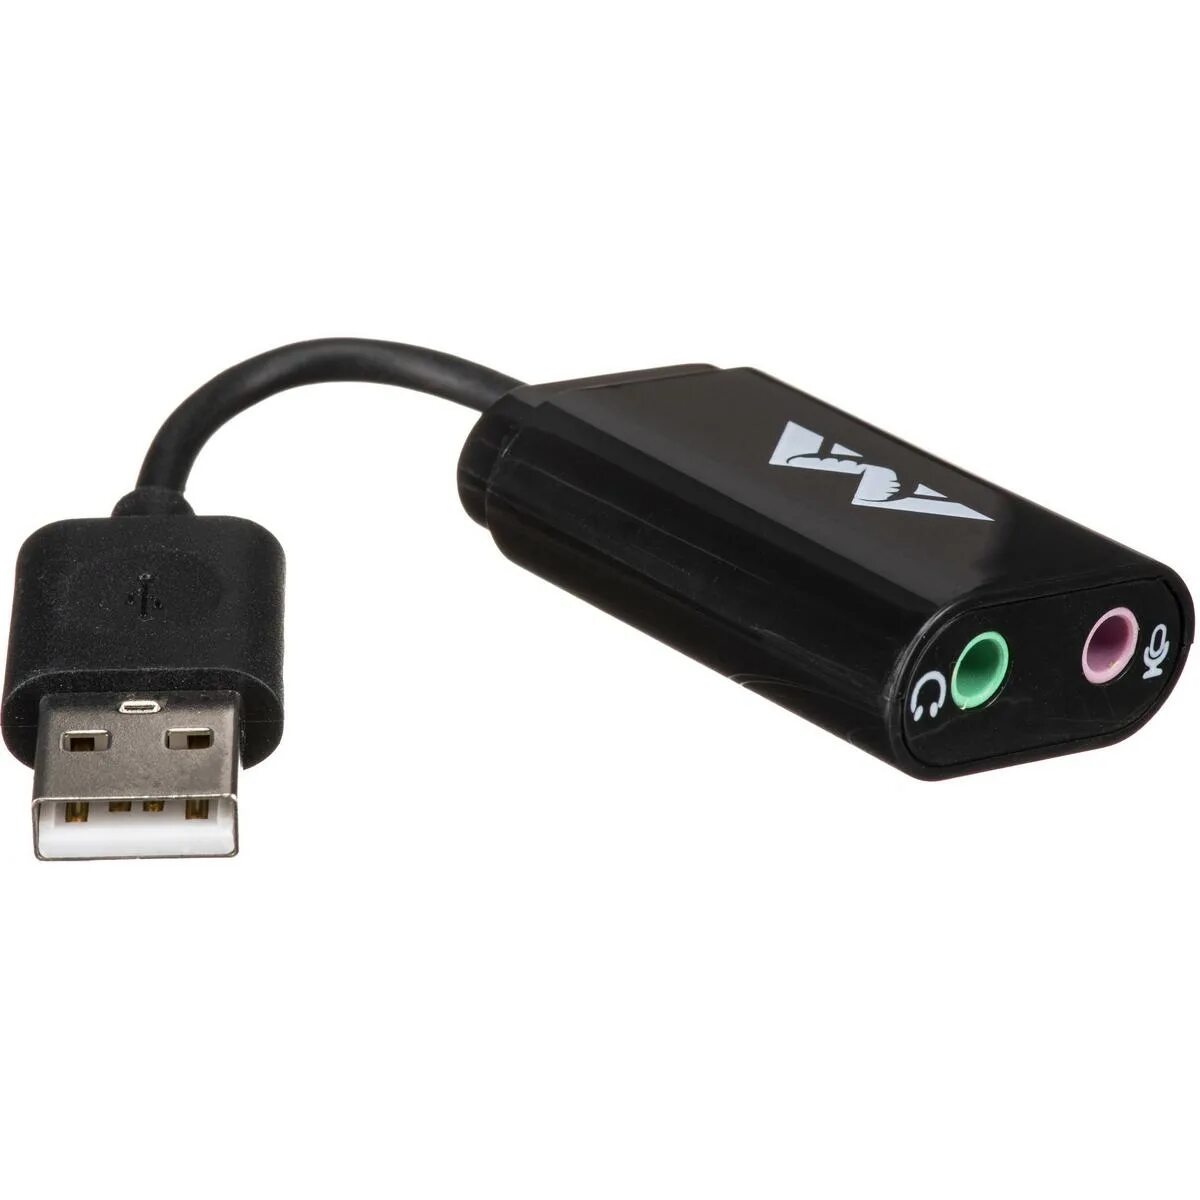 Звуковая карта usb купить. Звуковая карта EXPRESSCARD. USB Sound Card XP. Logitech USB звуковая карта USB на 3,5 мм. Звуковая карта юсб 71 игровая.